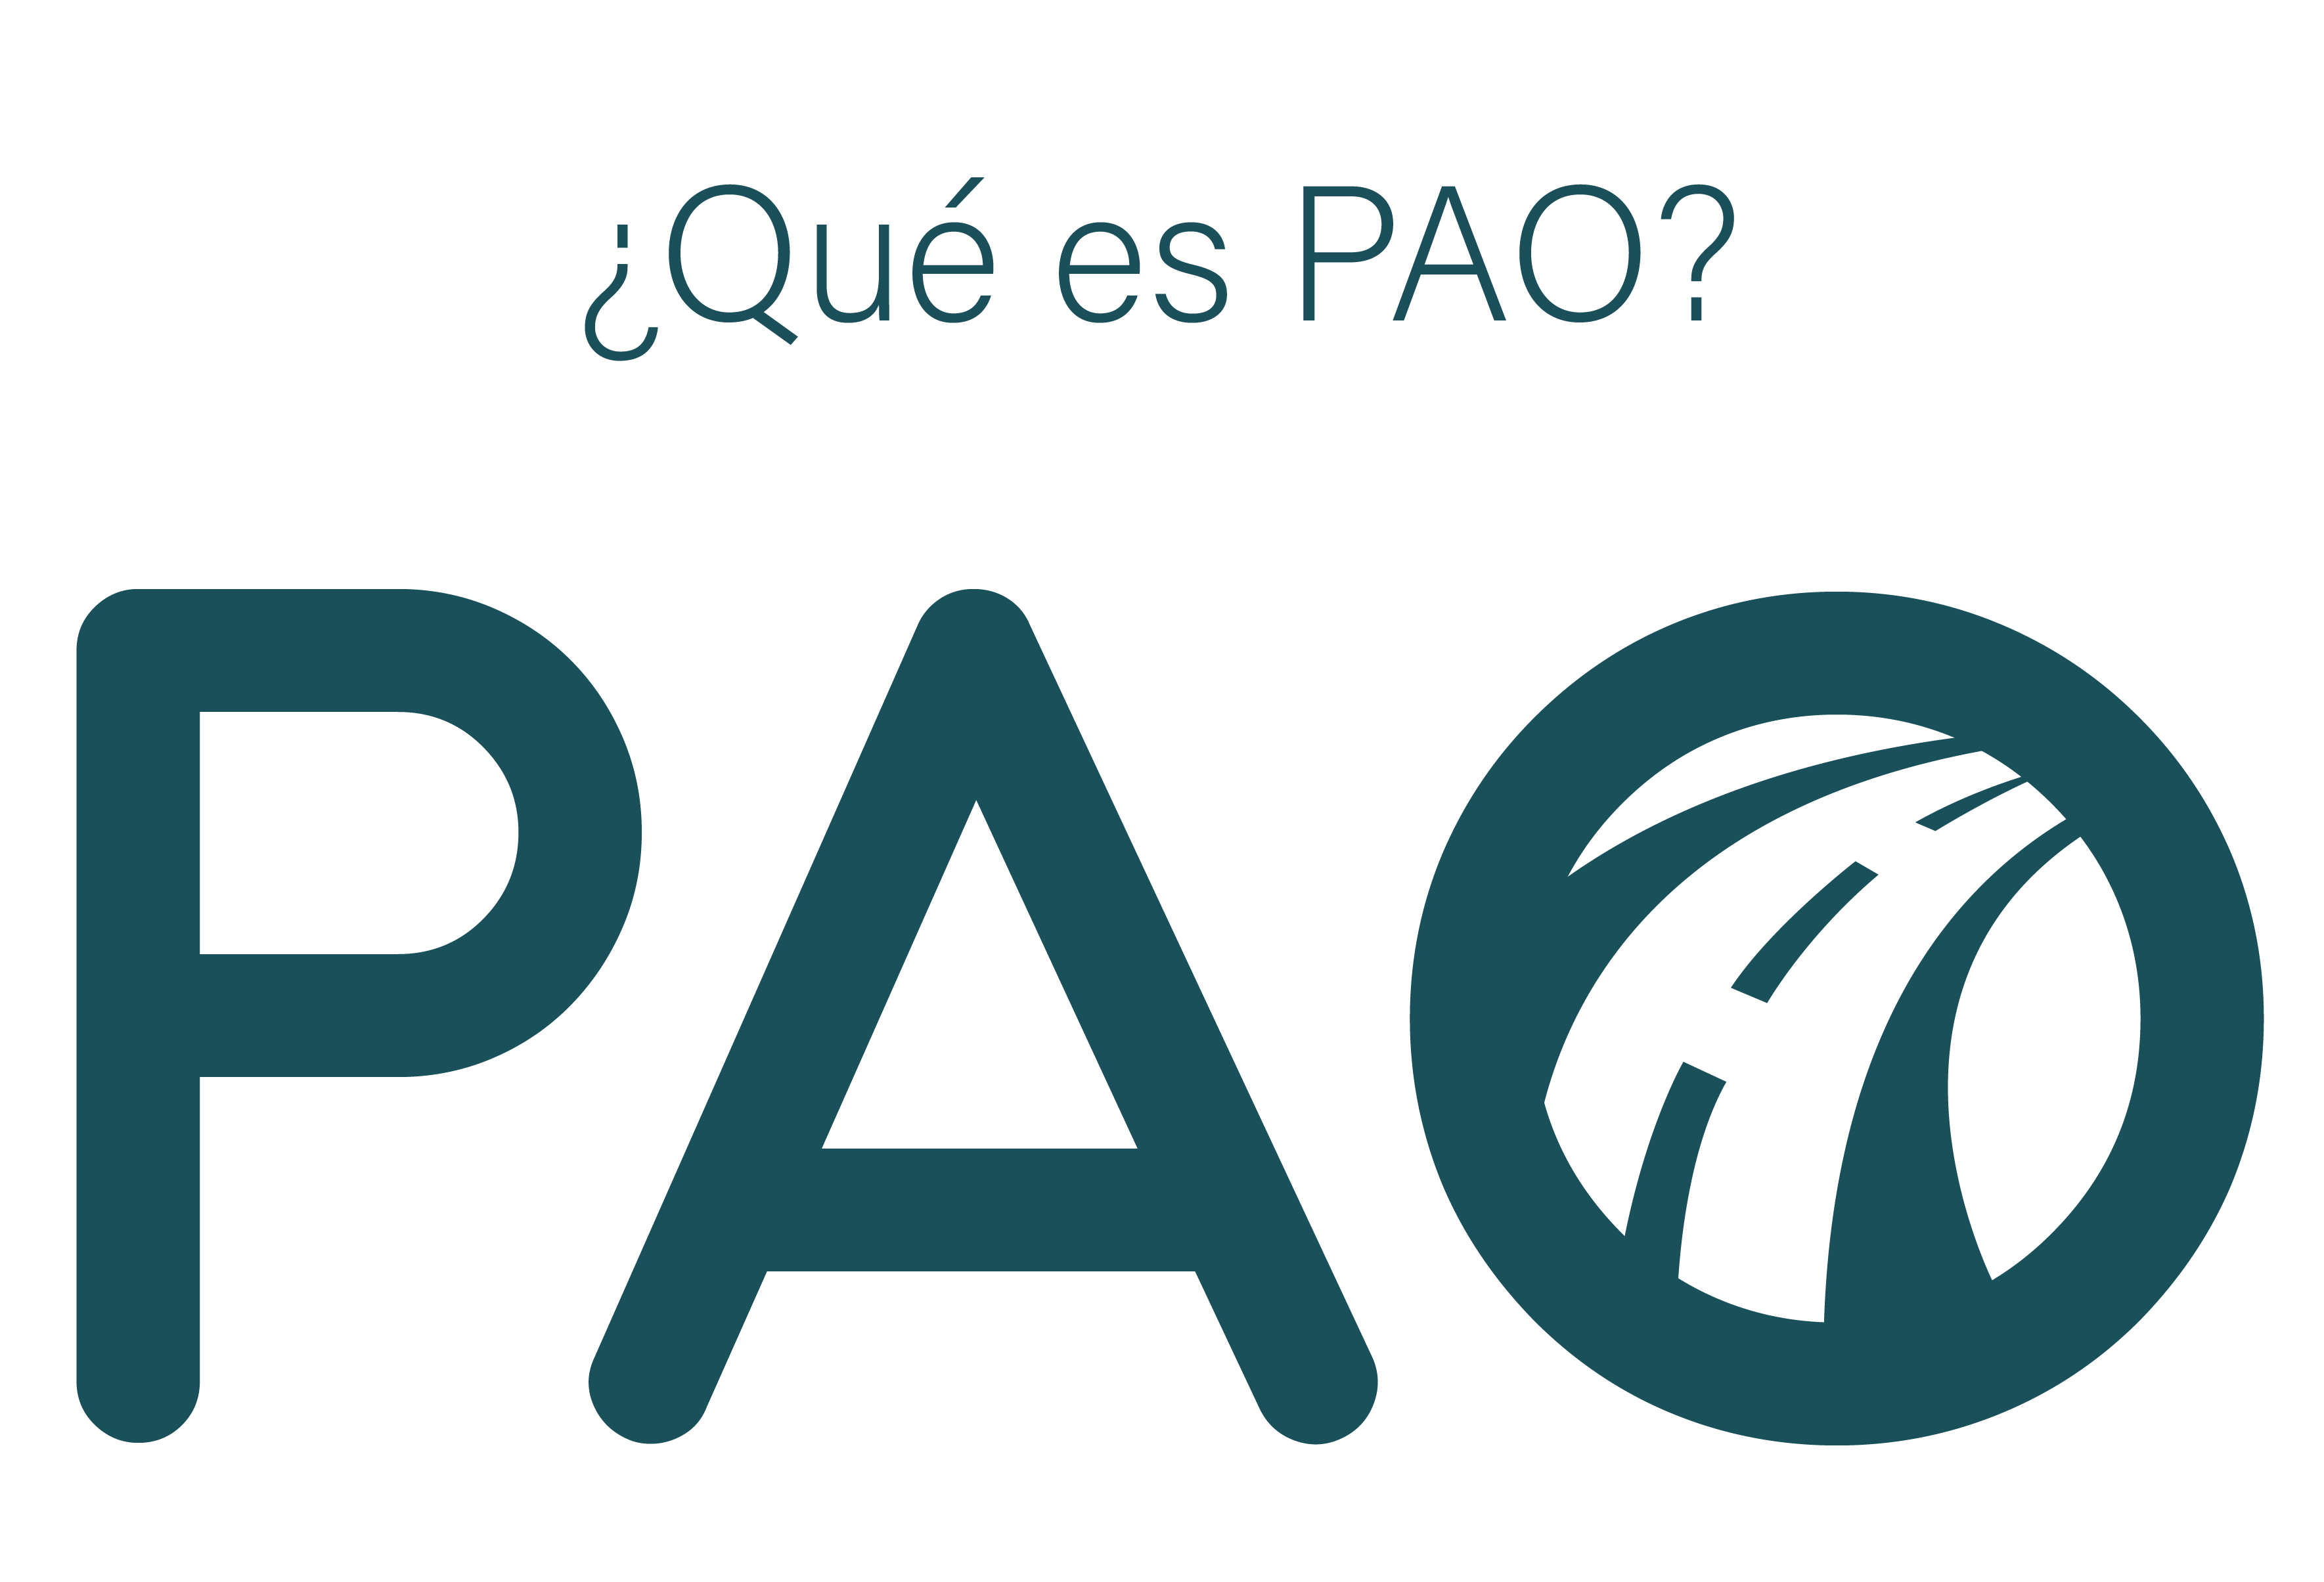 PAO logo